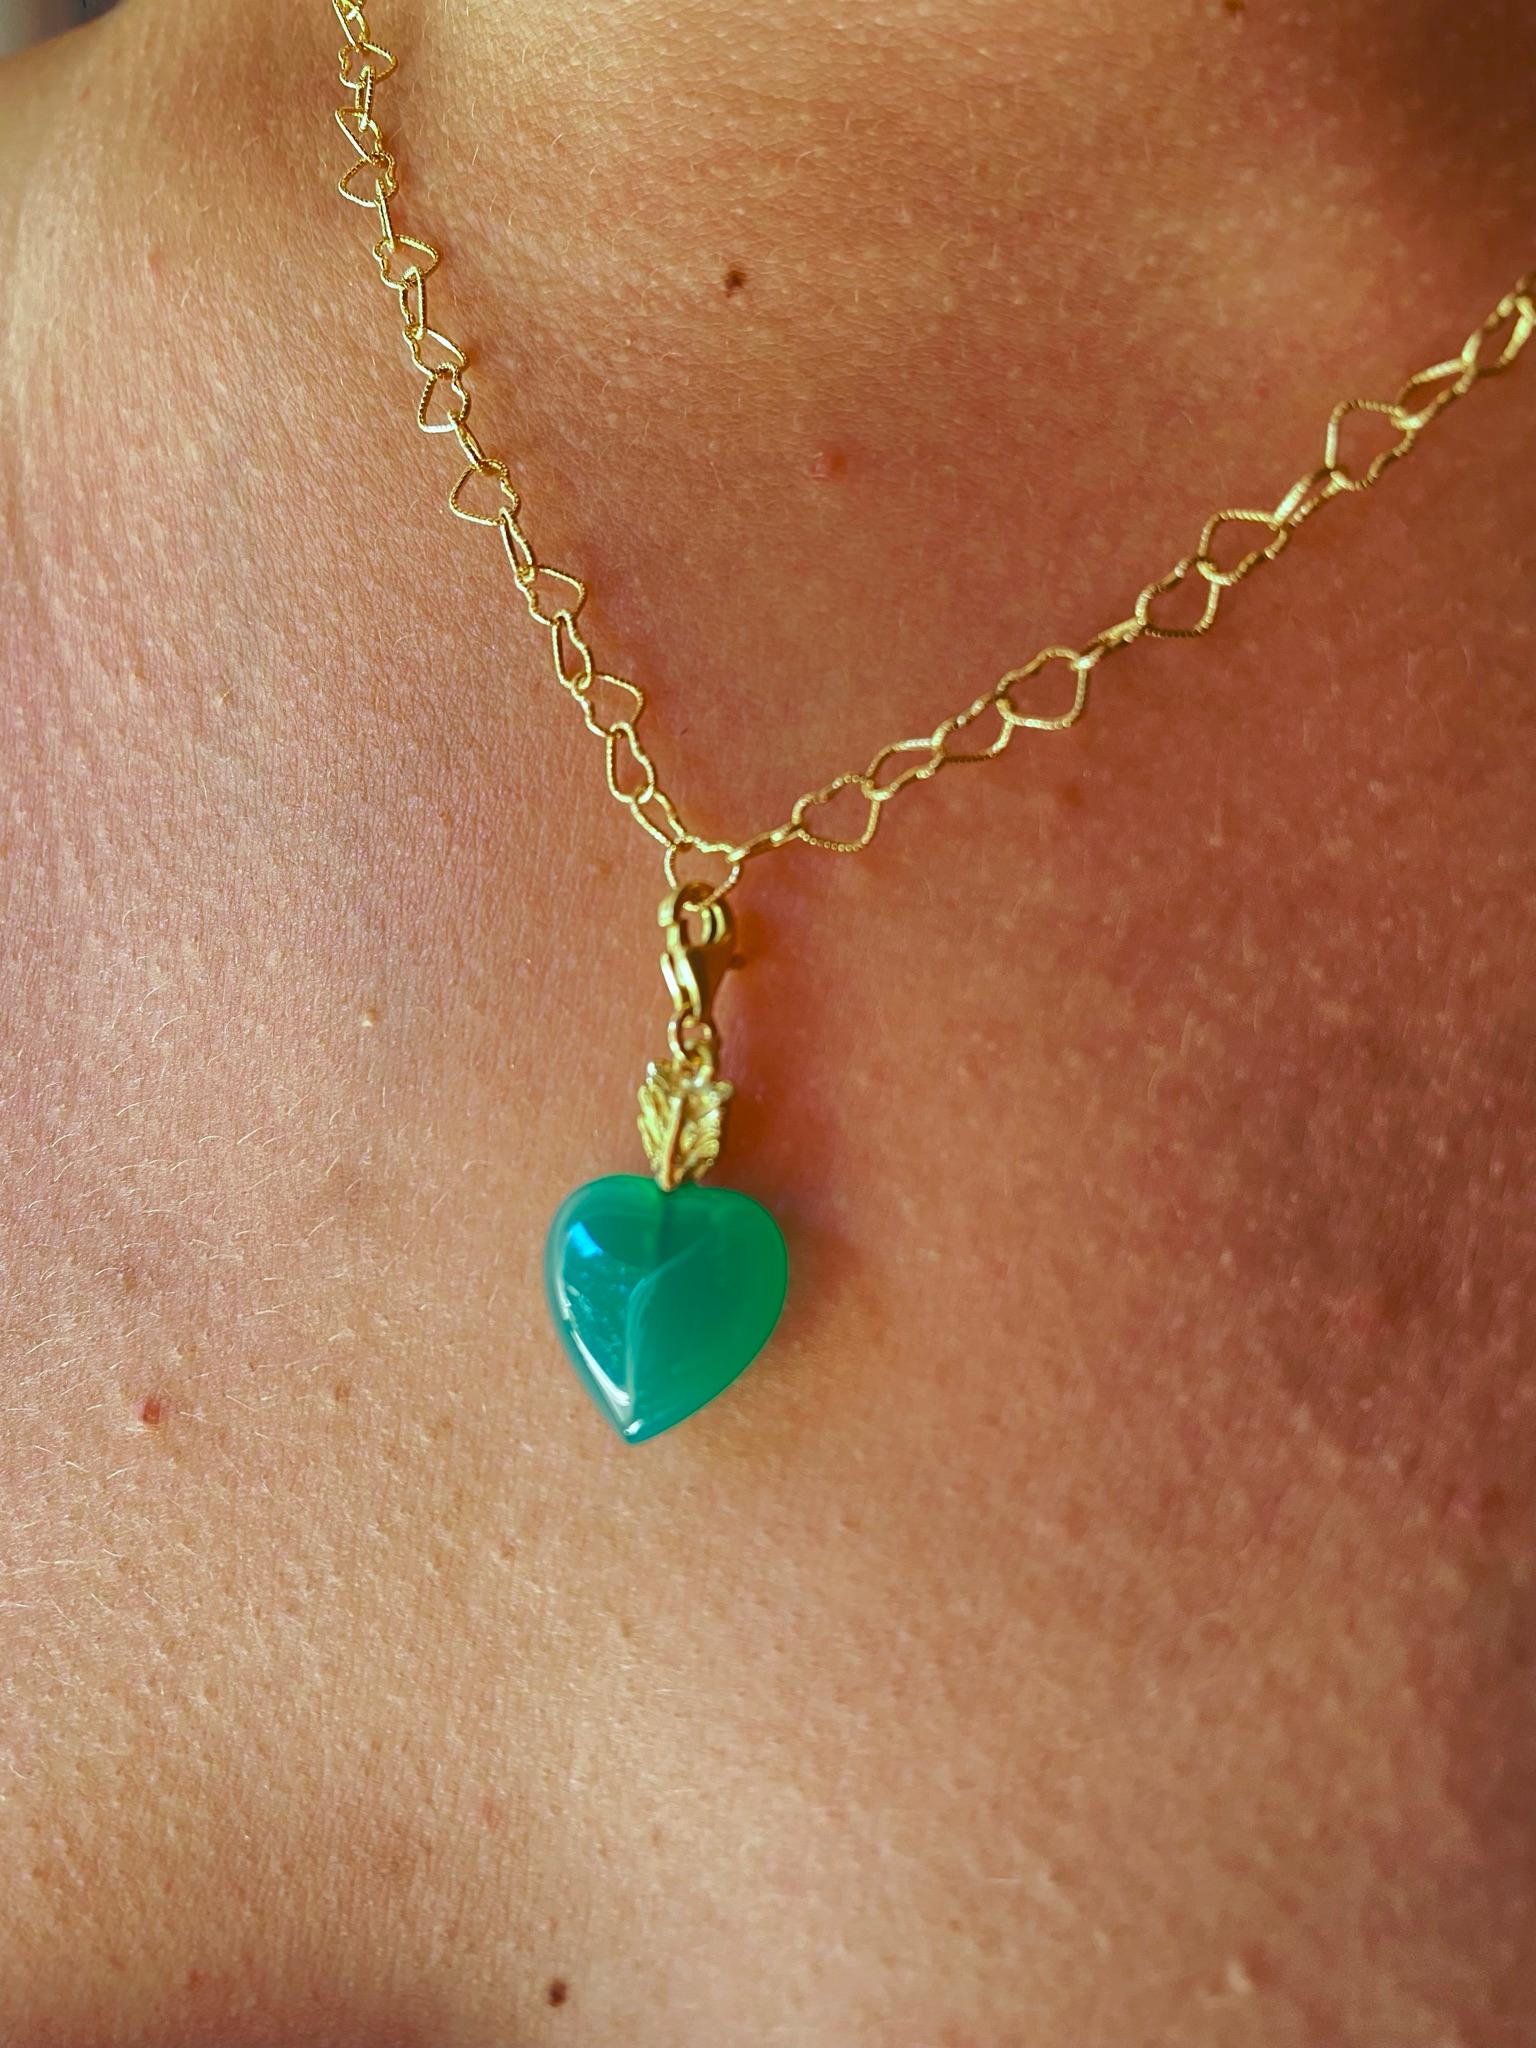 Rossella Ugolini Design Collection un joli pendentif fabriqué à la main en or 18 carats et orné d'une belle agate verte en forme de cœur. Le vert est la couleur de la joie, il est vivant ! Cette breloque représente un hymne à la joie de l'amour que